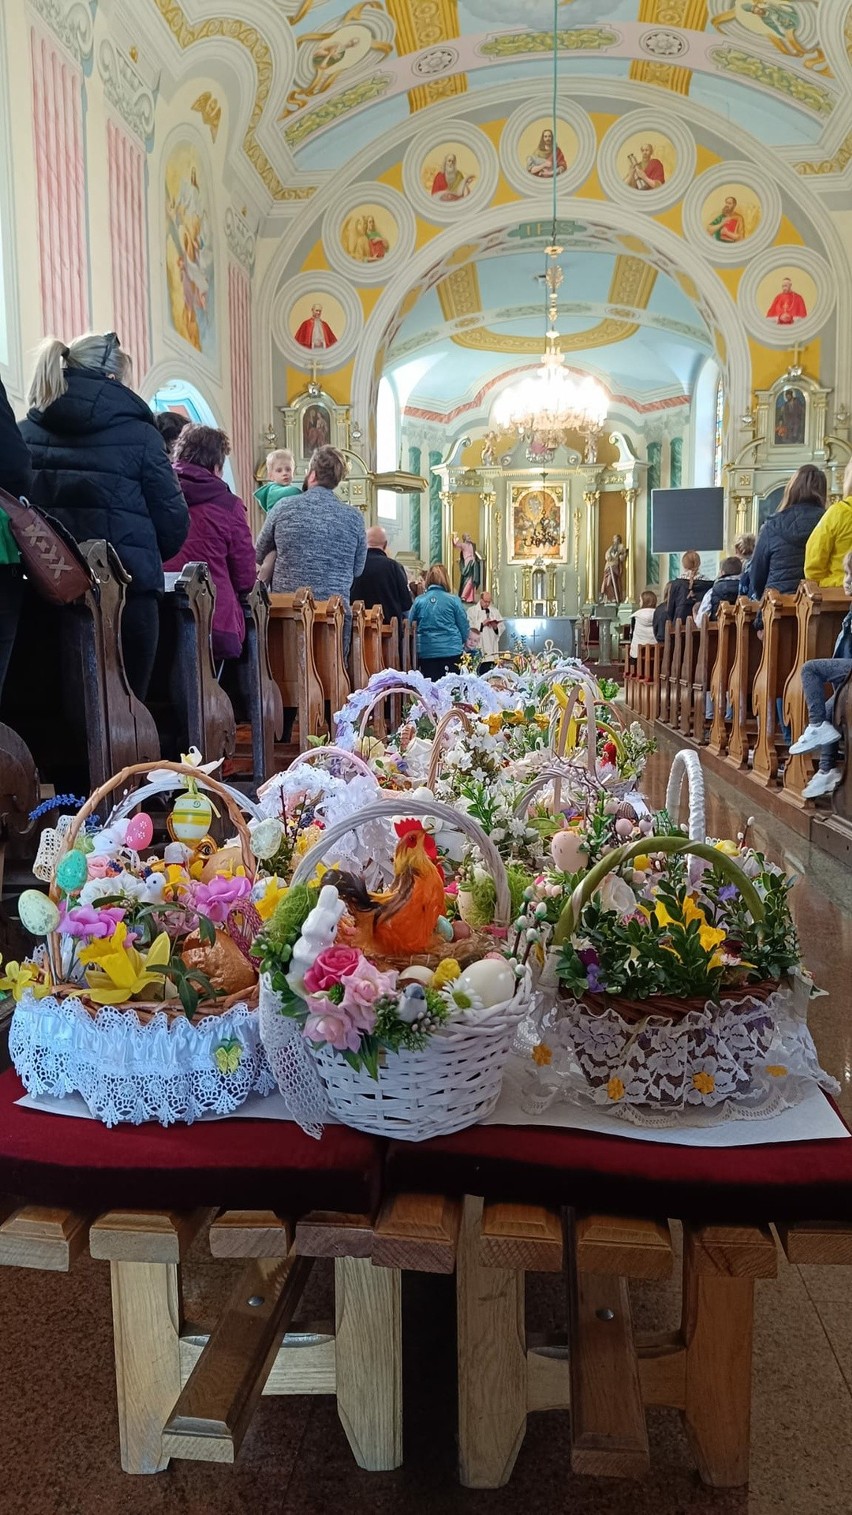 Wiele osób na święceniu pokarmów w kościele pod wezwaniem Przemienienia Pańskiego w Kazanowie